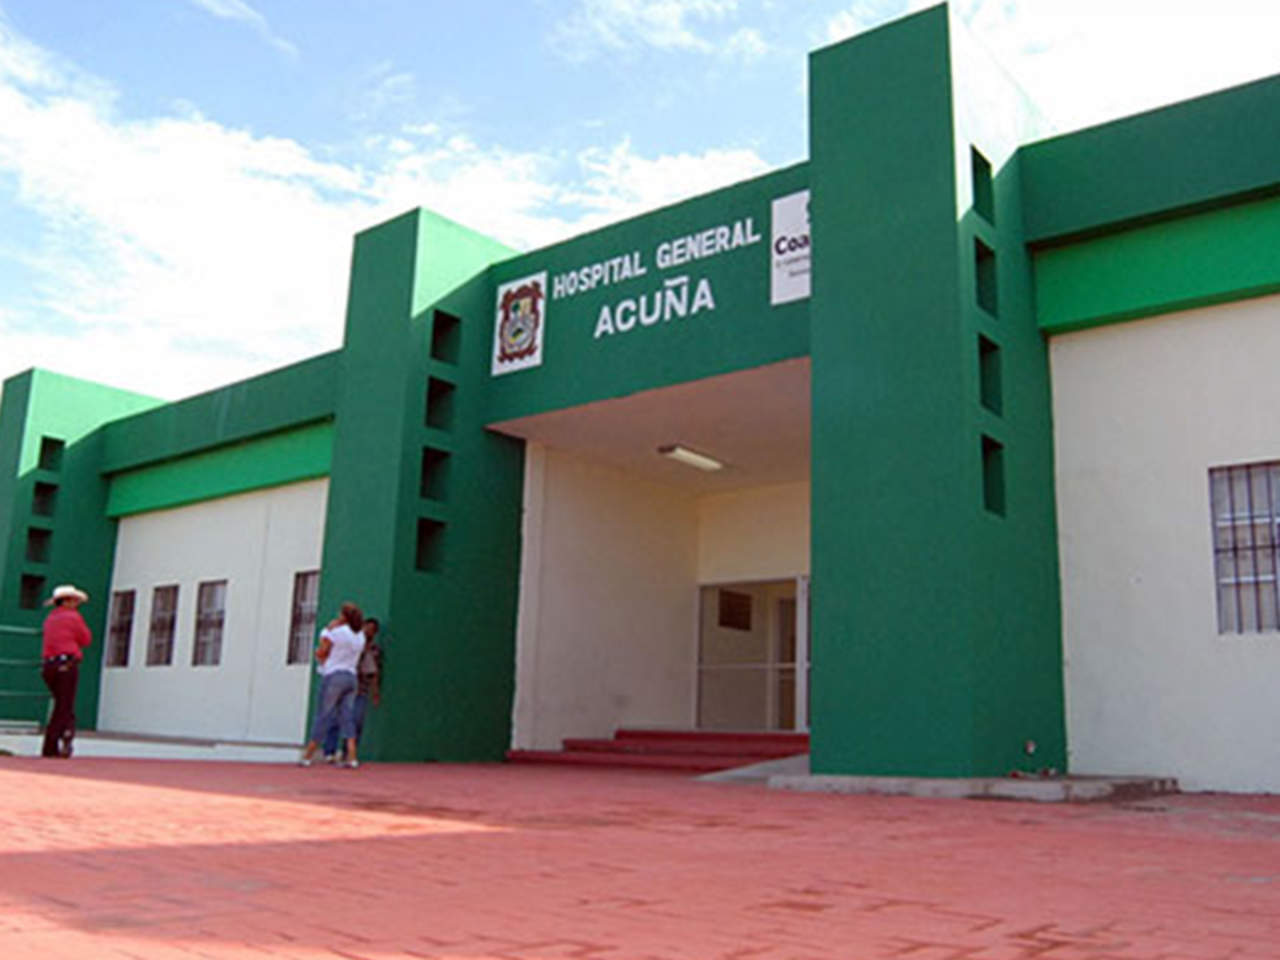 La persona ingresó a la sala de urgencias del Hospital General de Acuña, junto con otro menor, identificado como Juan Manuel (N), también de 15 años y quien murió el mismo viernes.